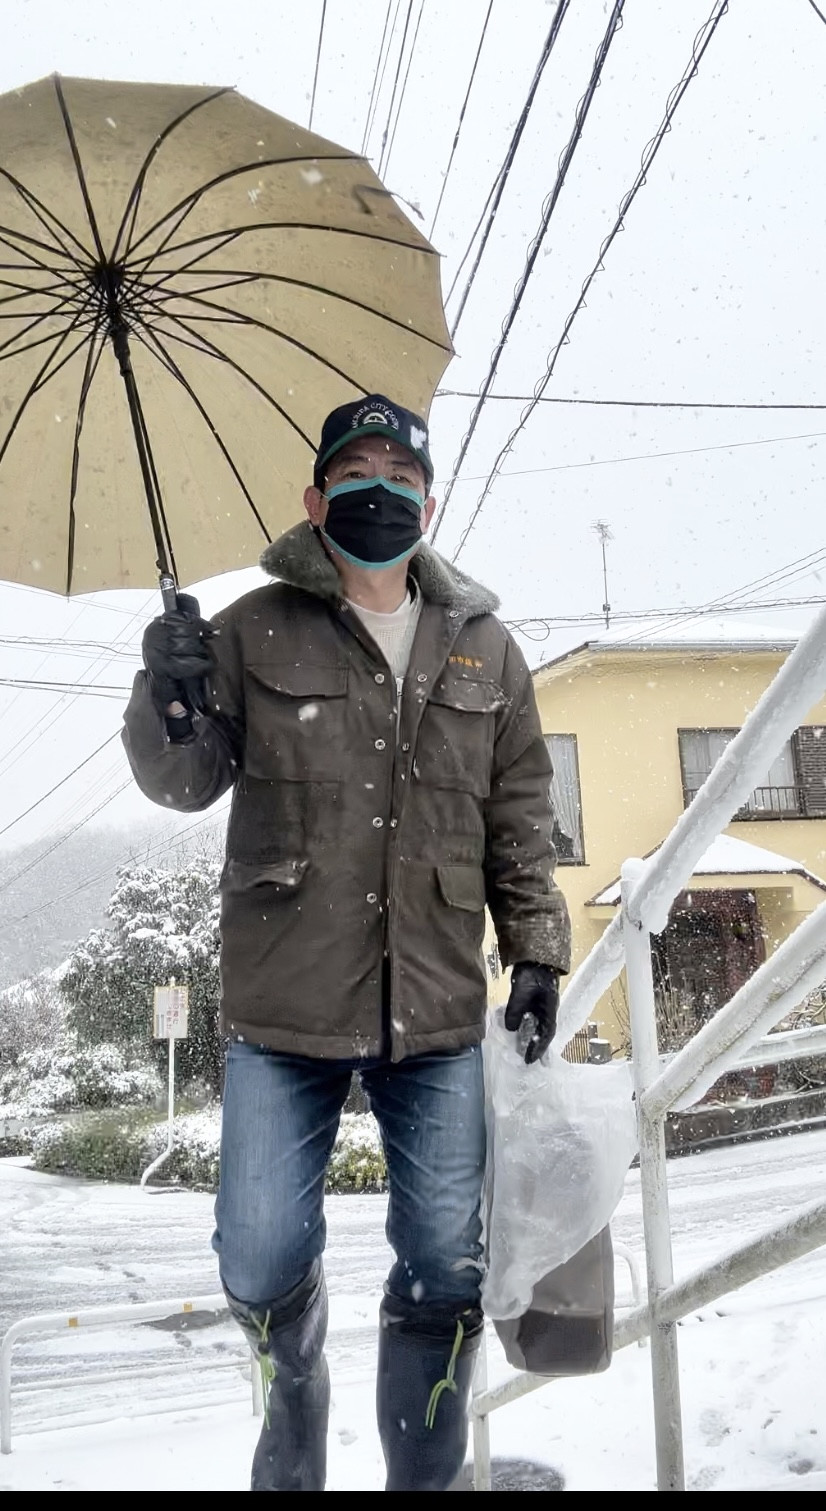 町田市にも大雪警報発令中です。 午前中は車で移動していましたが、午後からは近場を徒歩に切り替え、これからはテレワークにします。 みなさま、なるべくお気をつけて、早めの帰宅をお願いします。  #大雪警報